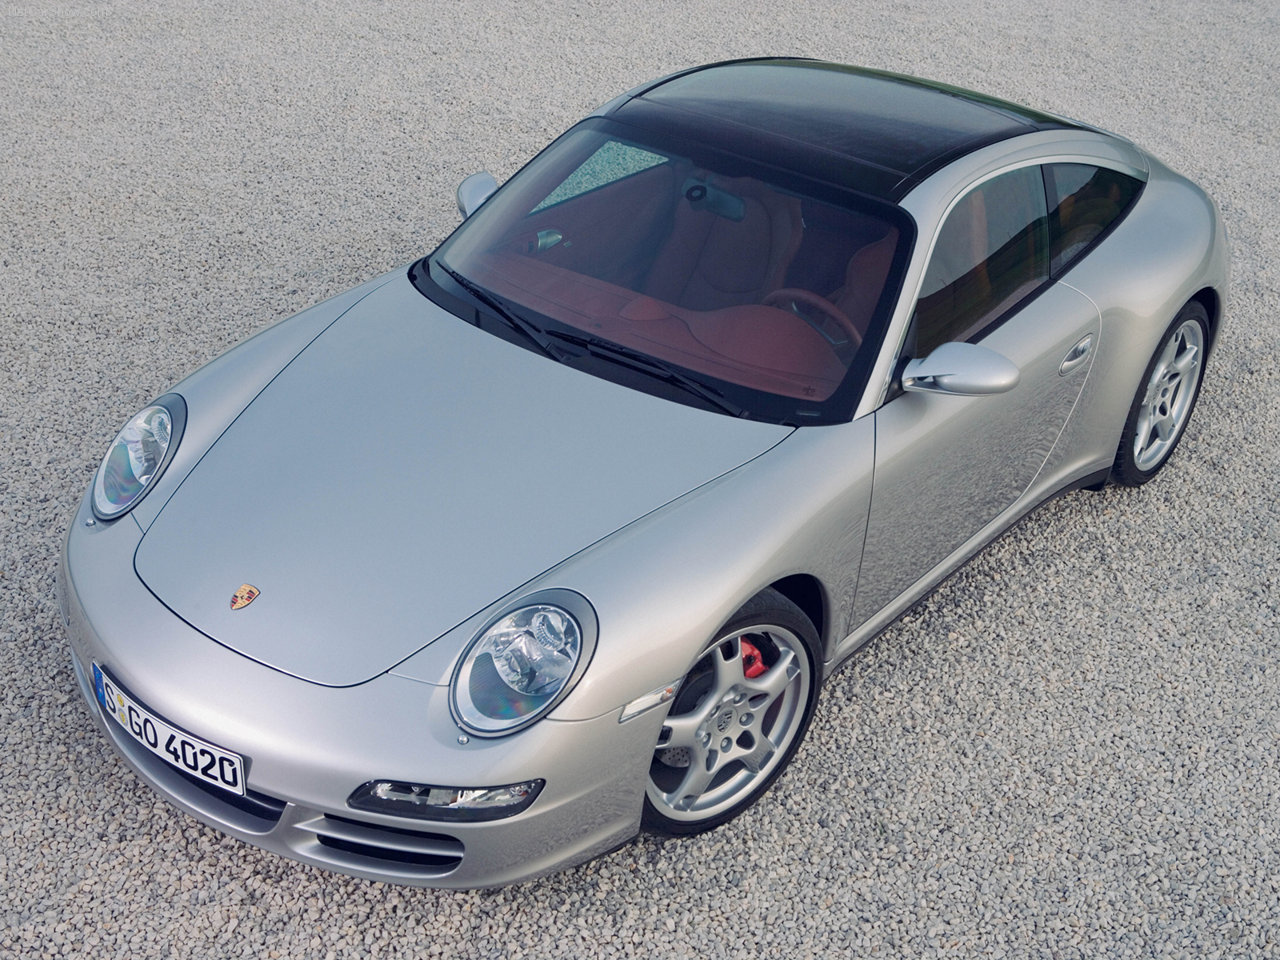 2007 Porsche 911 Targa 4s 1280×960 01